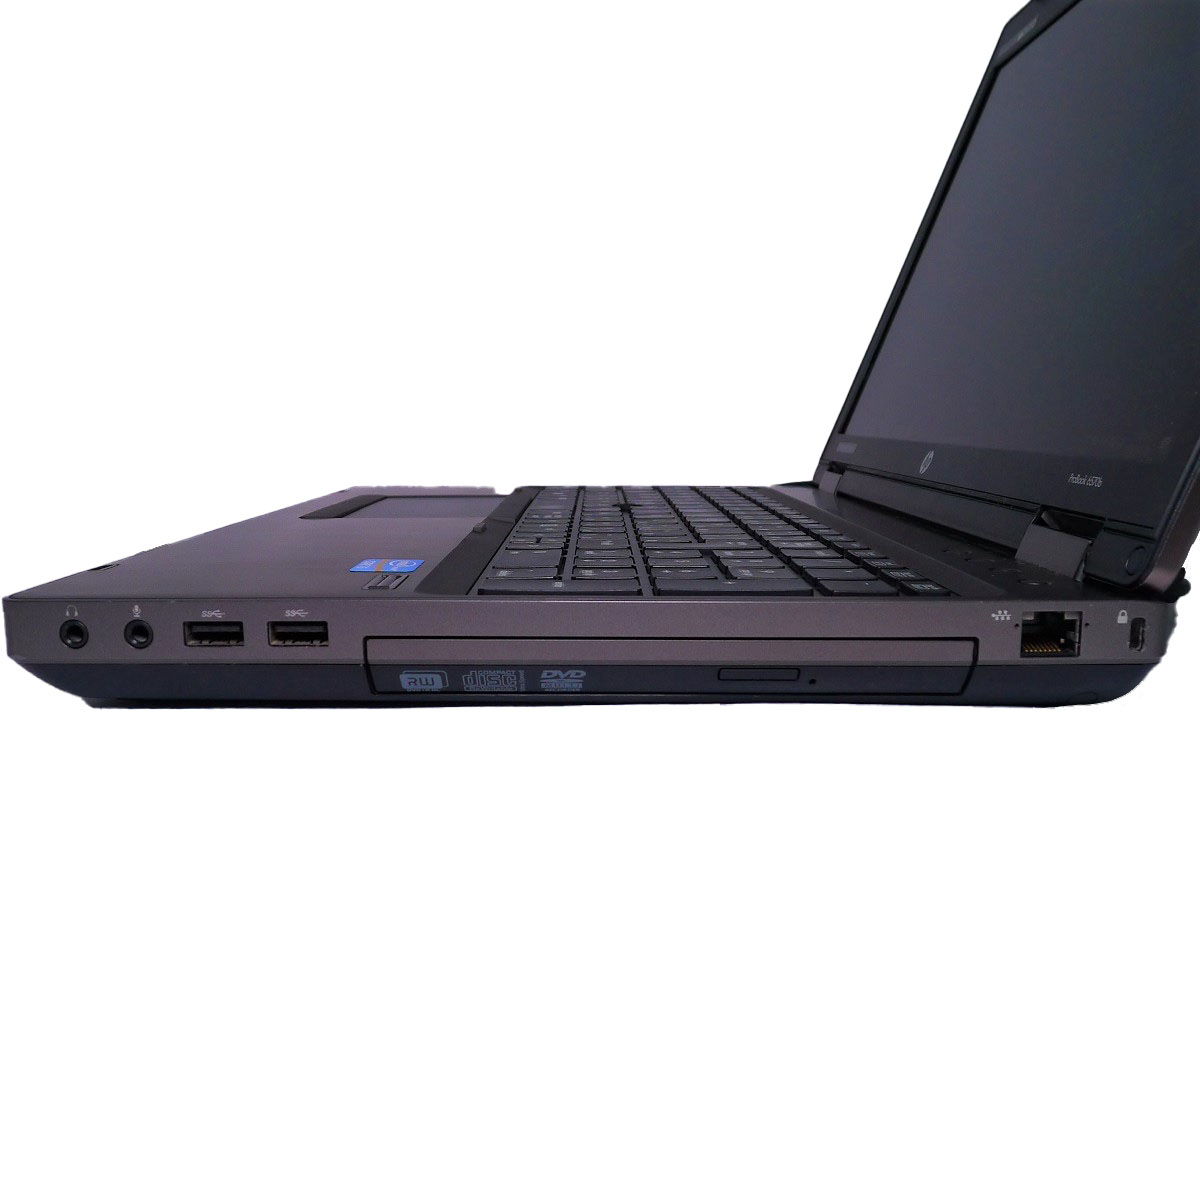 DELL Latitude E6540 Core i3 8GB HDD250GB スーパーマルチ 無線LAN Windows10 64bitWPSOffice 15.6インチ ゲーミングPC  パソコン  ノートパソコン